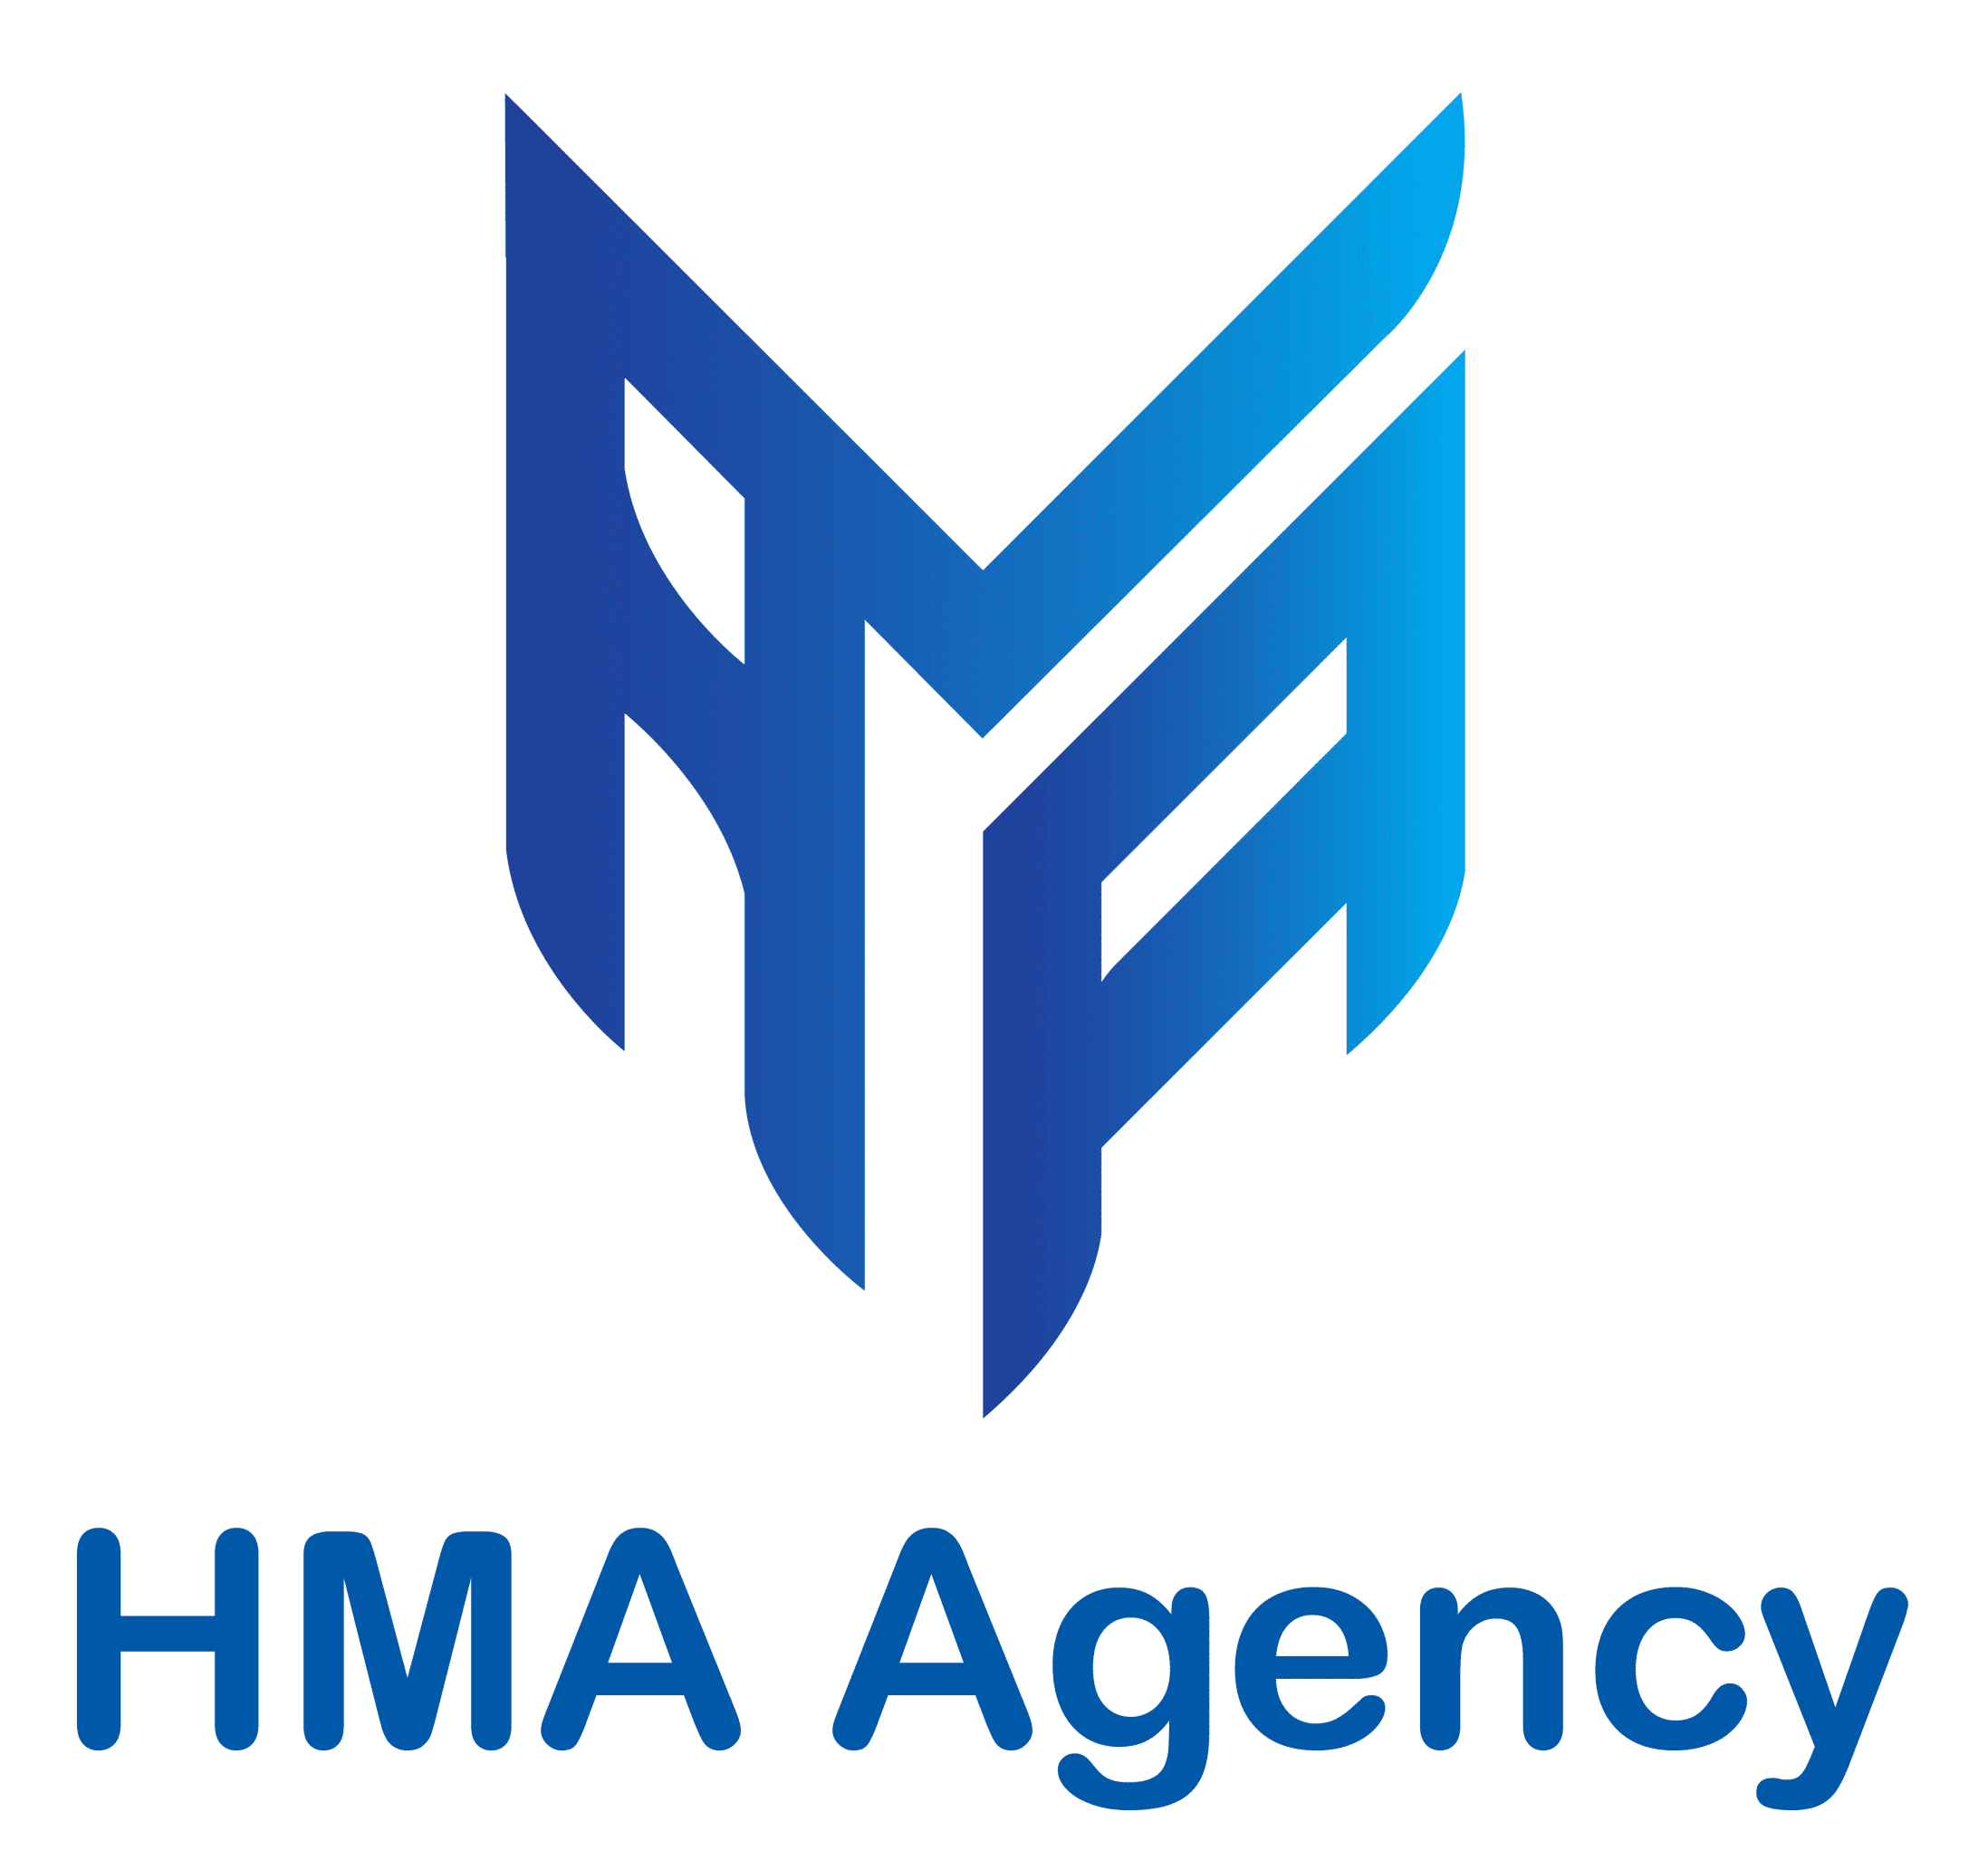 HMA Agency